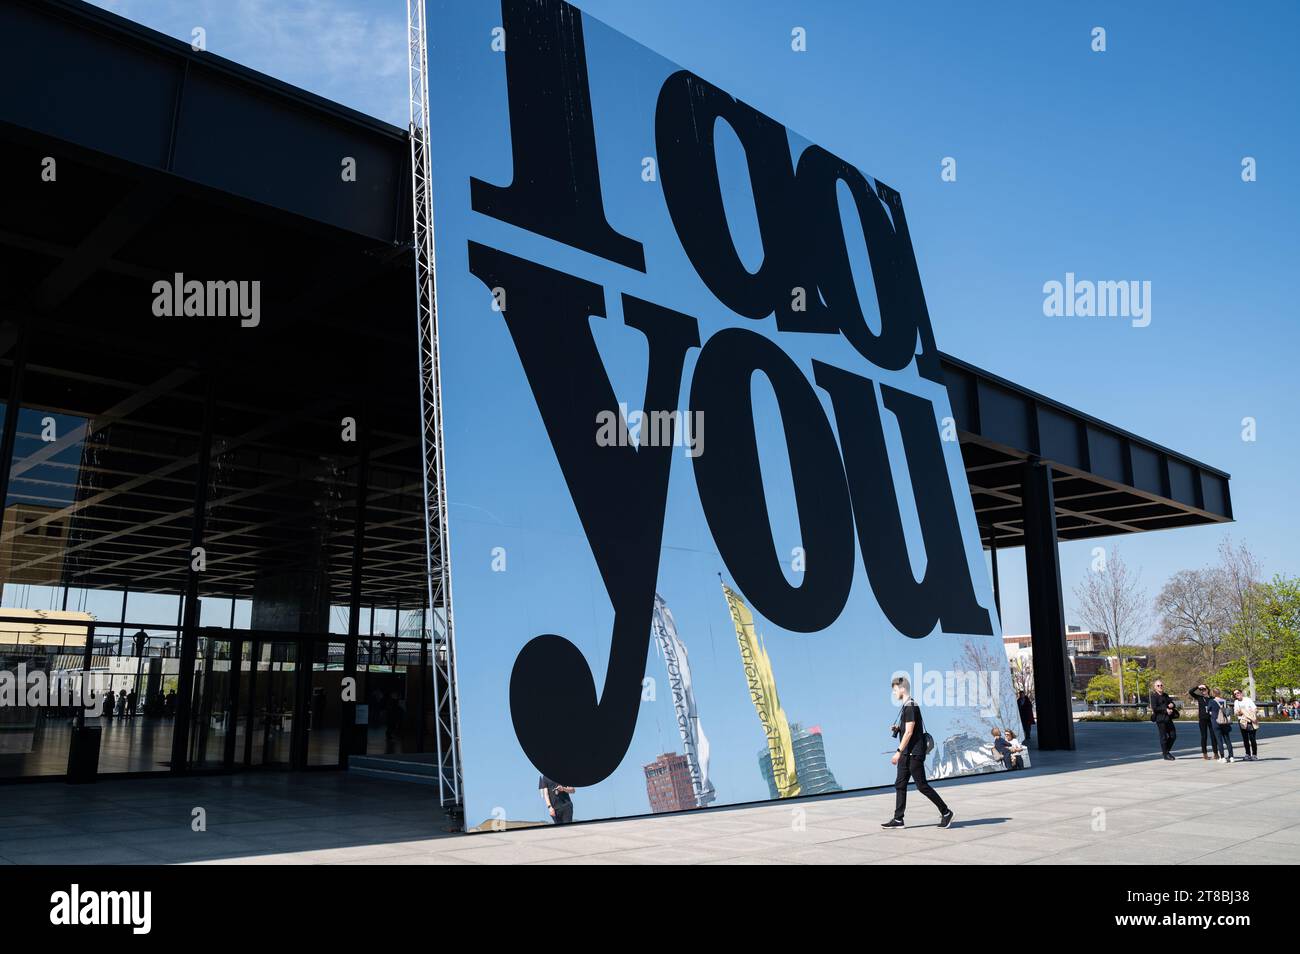 22.04.2023, Berlin, Deutschland, Europa - Besucher vor einer riesigen Spiegelinstallation "I do You", die Teil der Ausstellung in der Nationalgalerie ist. Stockfoto